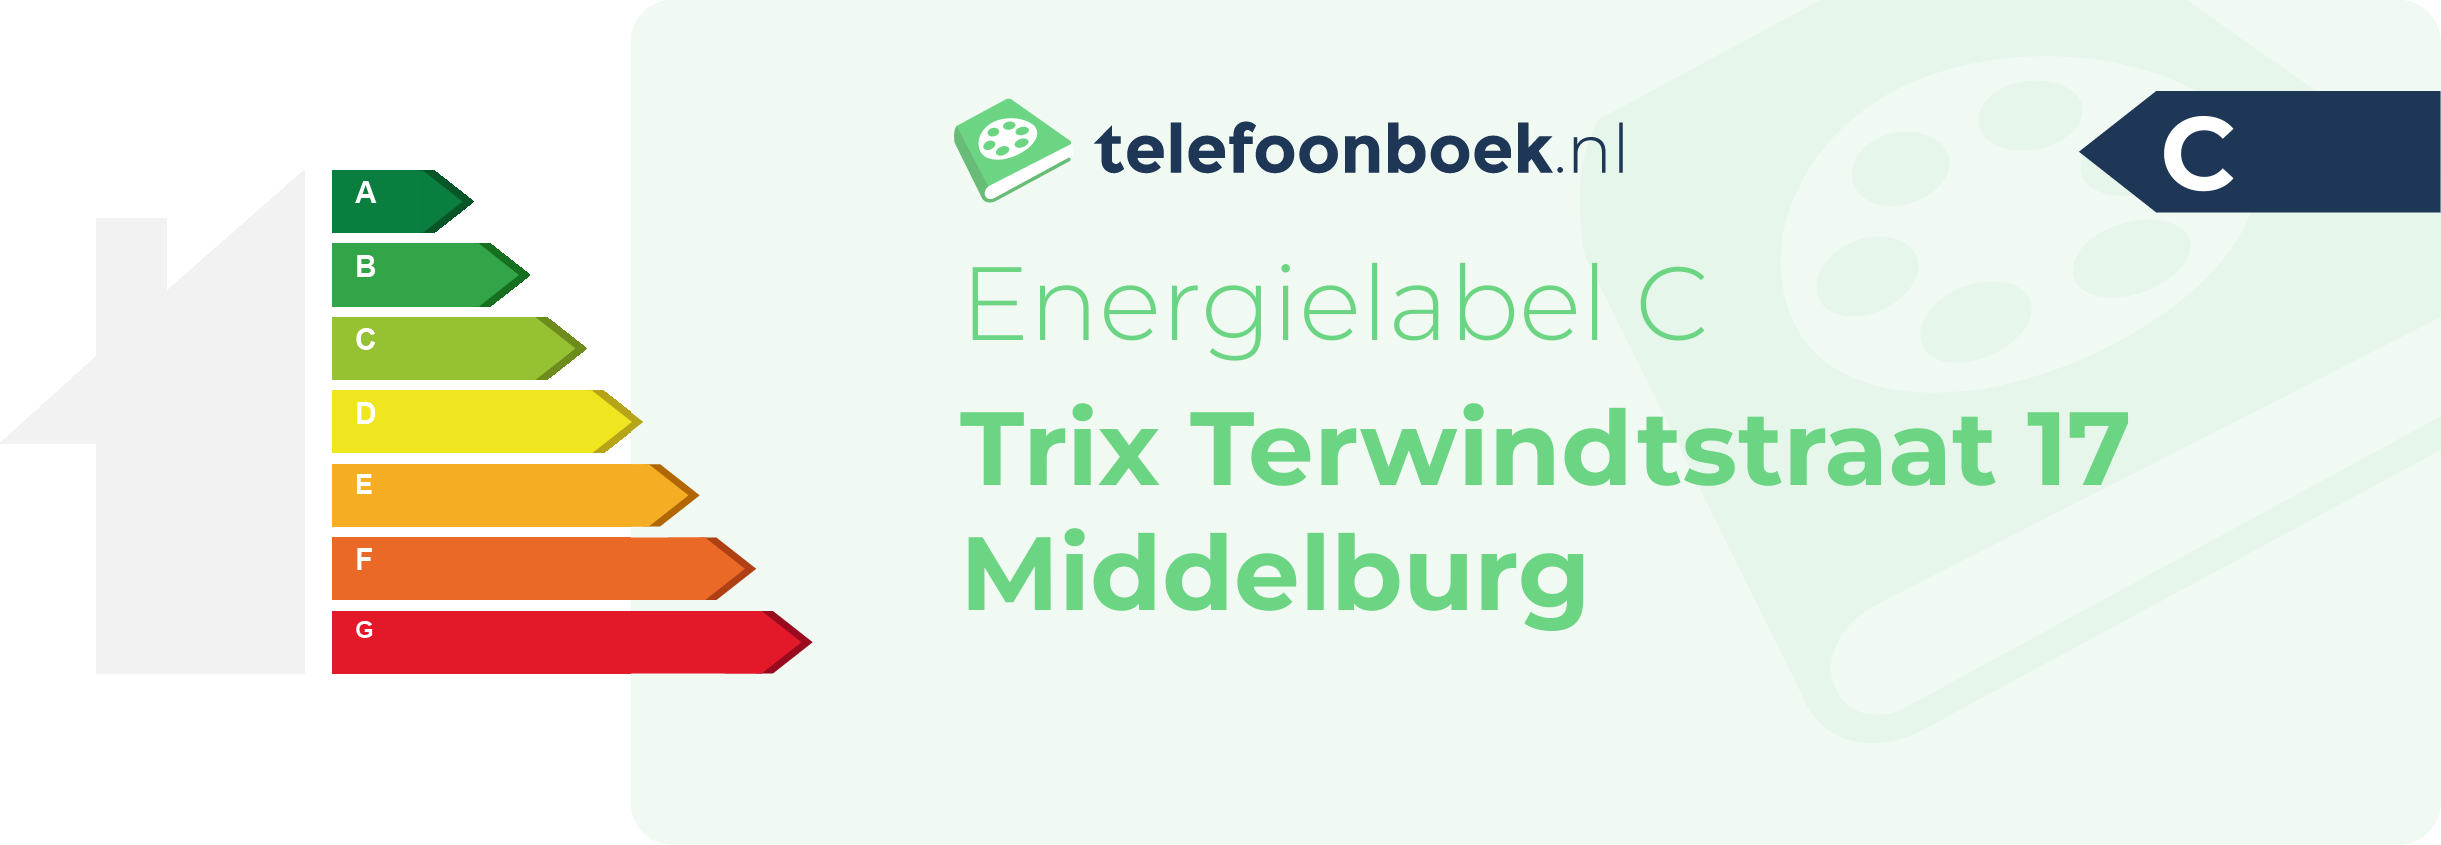 Energielabel Trix Terwindtstraat 17 Middelburg